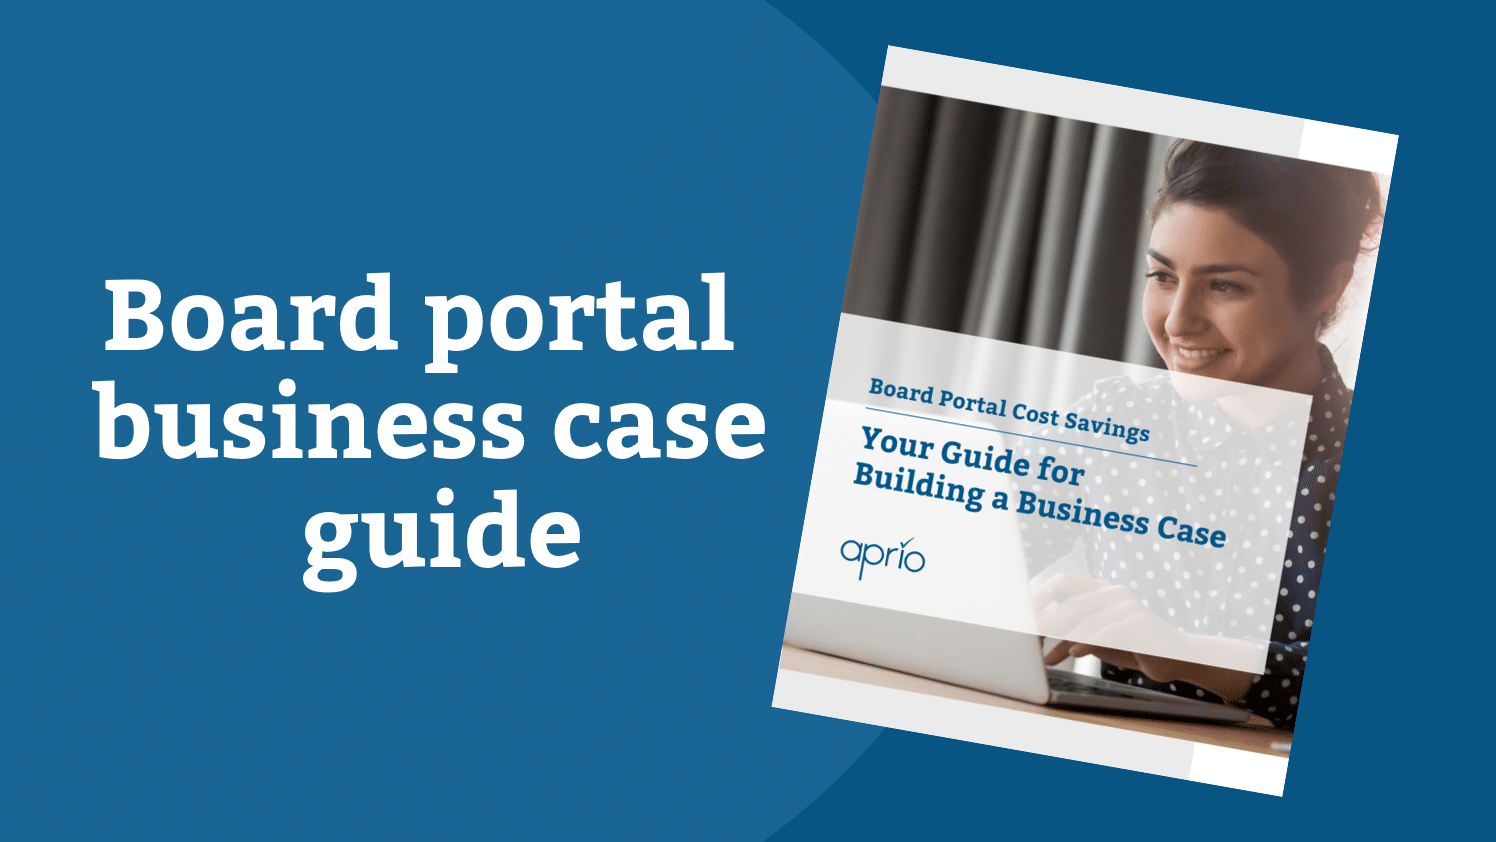 Board portal business case guide